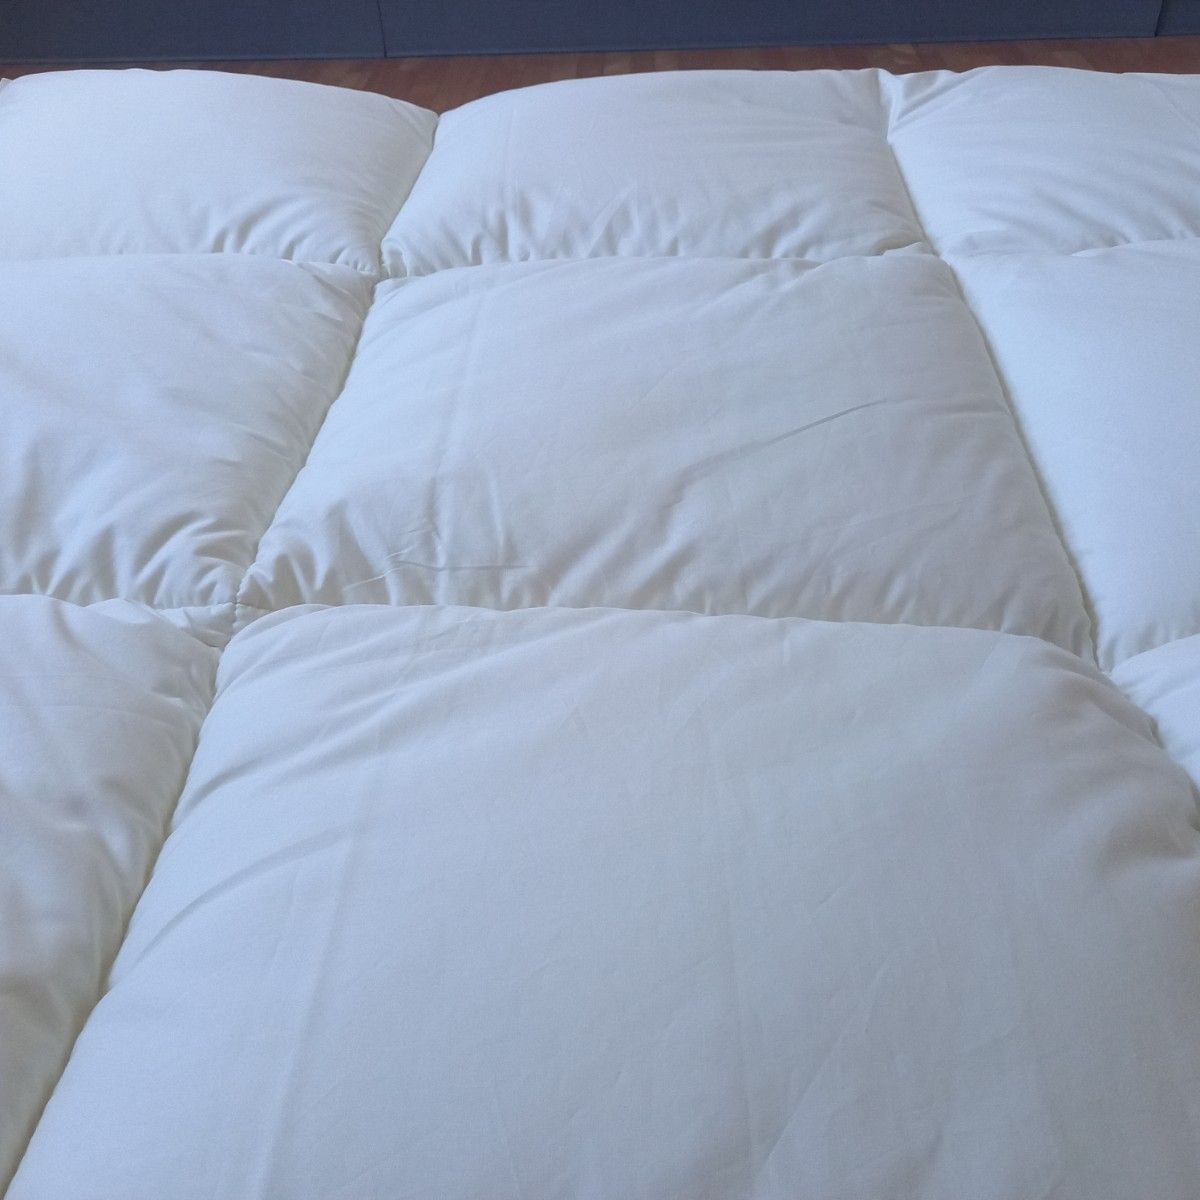 シングル ホテル仕様 増量タイプ 掛け布団 アレルギー対策 清潔 安心 日本製(羽毛布団 掛け布団 敷き布団 枕)等出品中です。 